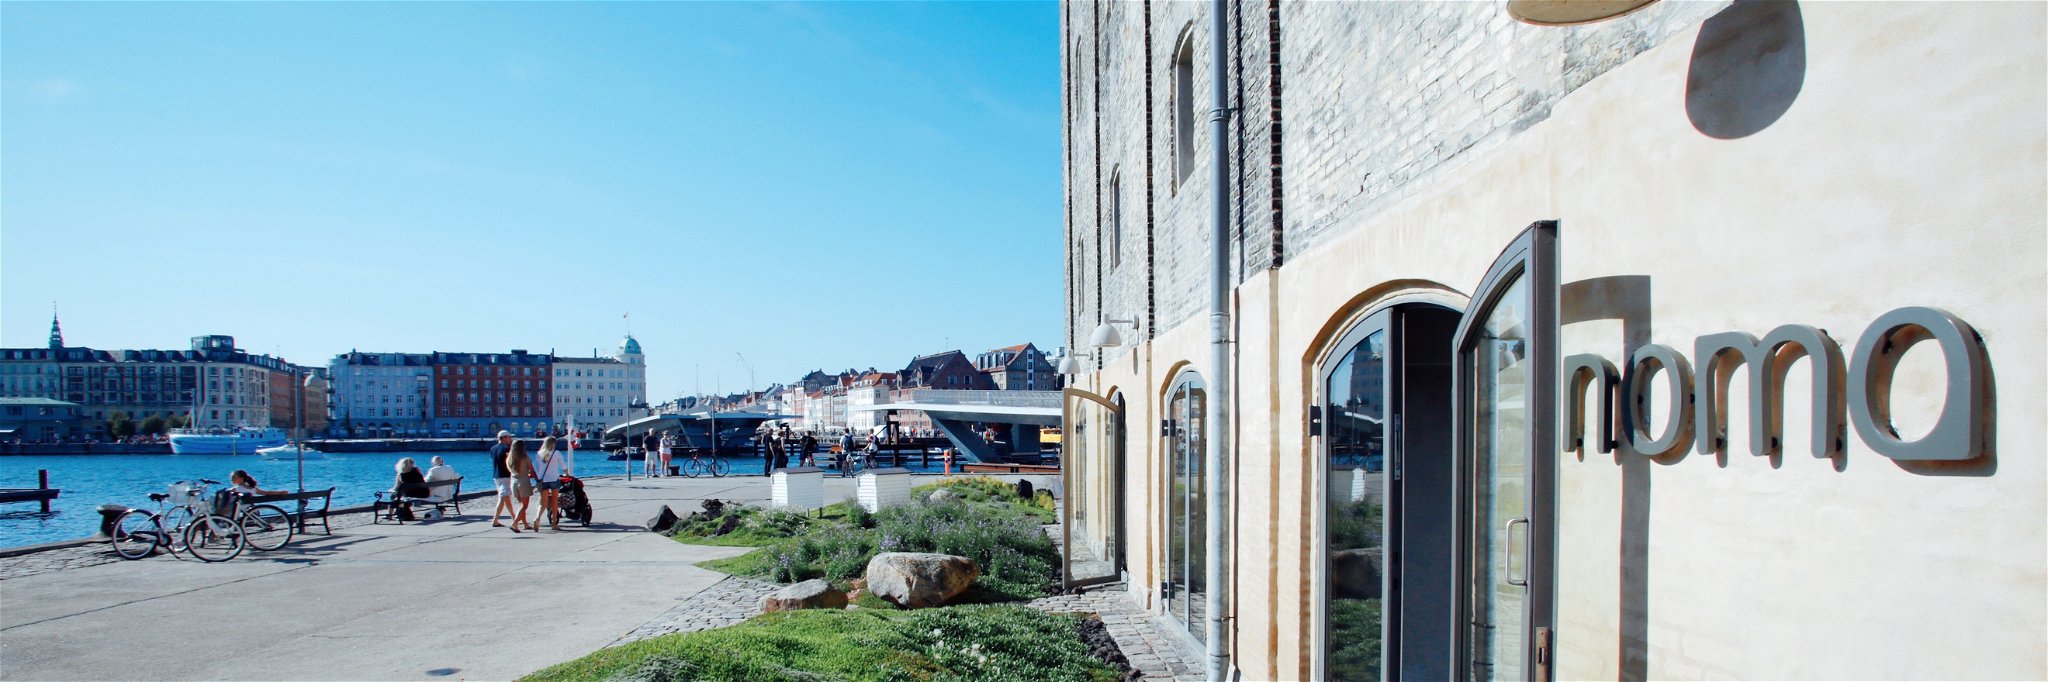 Noma, the three-Michelin-star restaurant run by chef René Redzepi in Copenhagen.&nbsp;